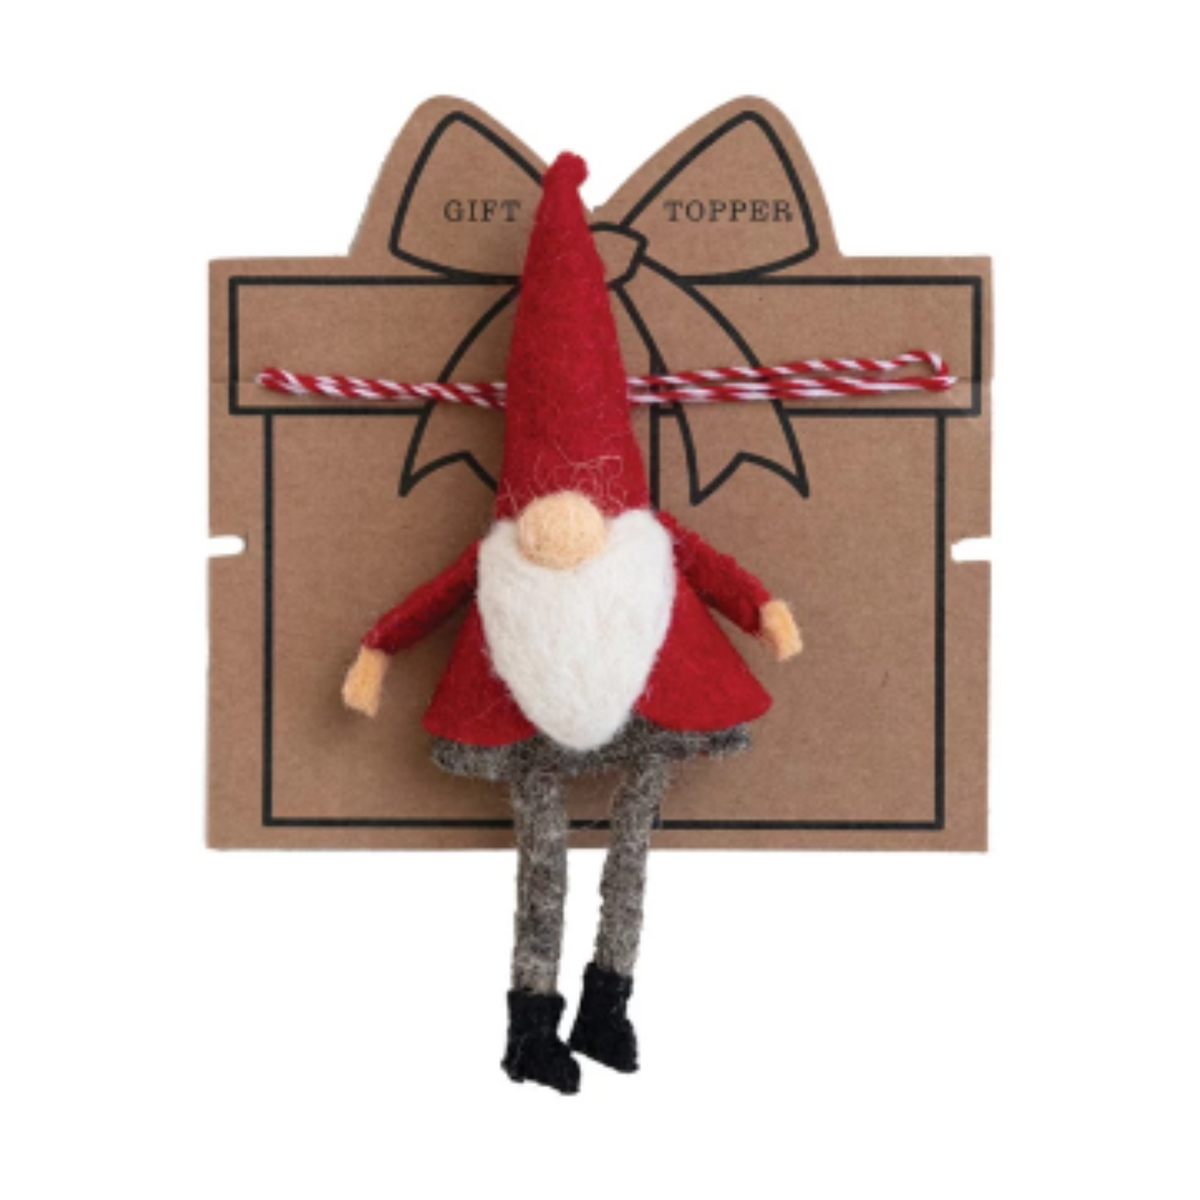 Handmade Wool Felt Gnome Gift Topper